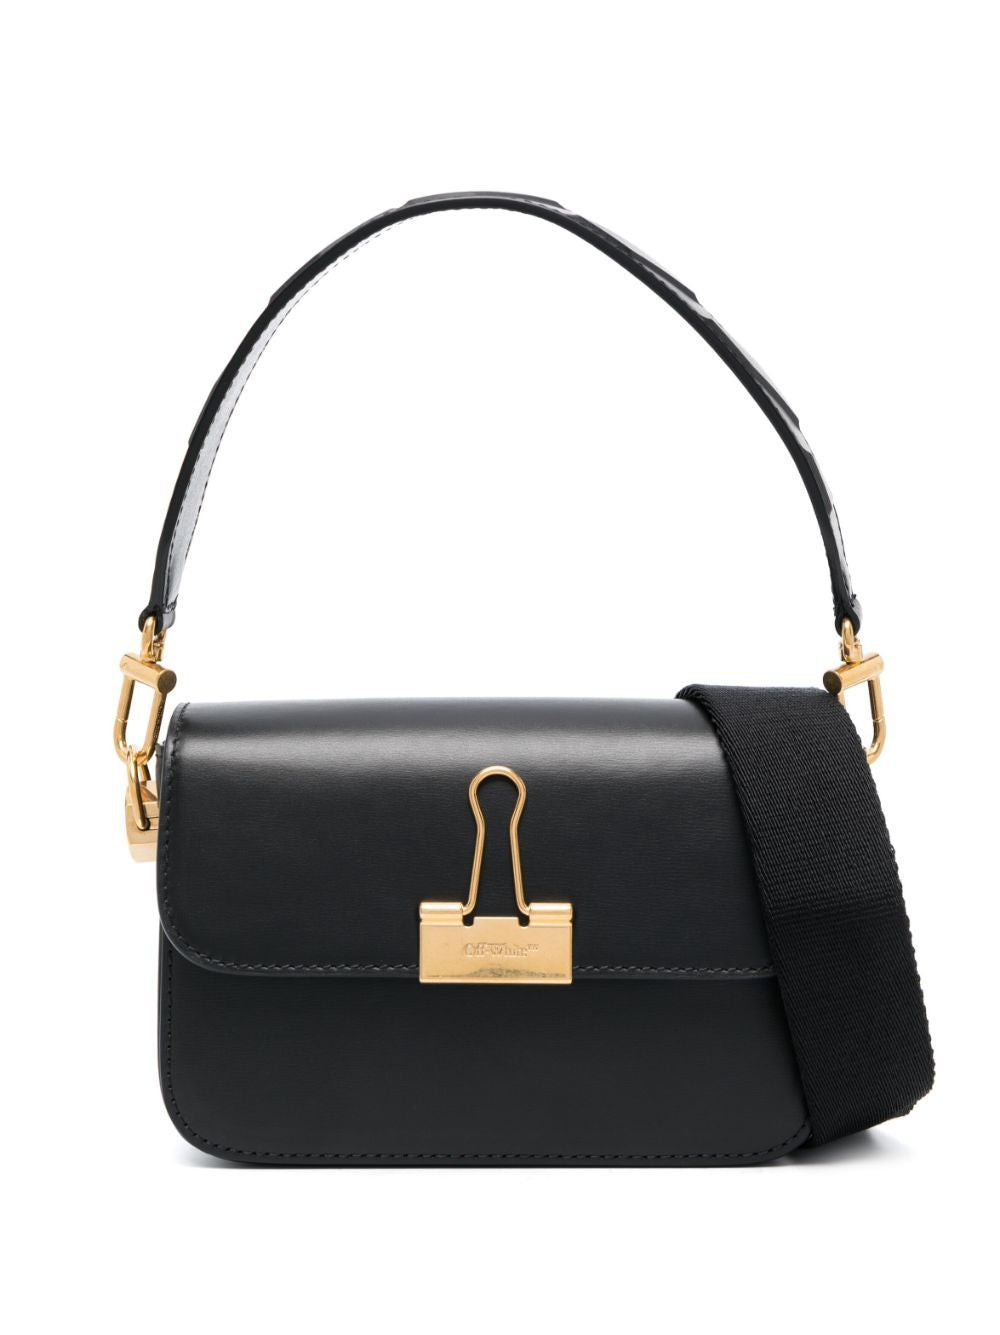 OFF-WHITE Black Calfskin Binder Shoulder Handbag